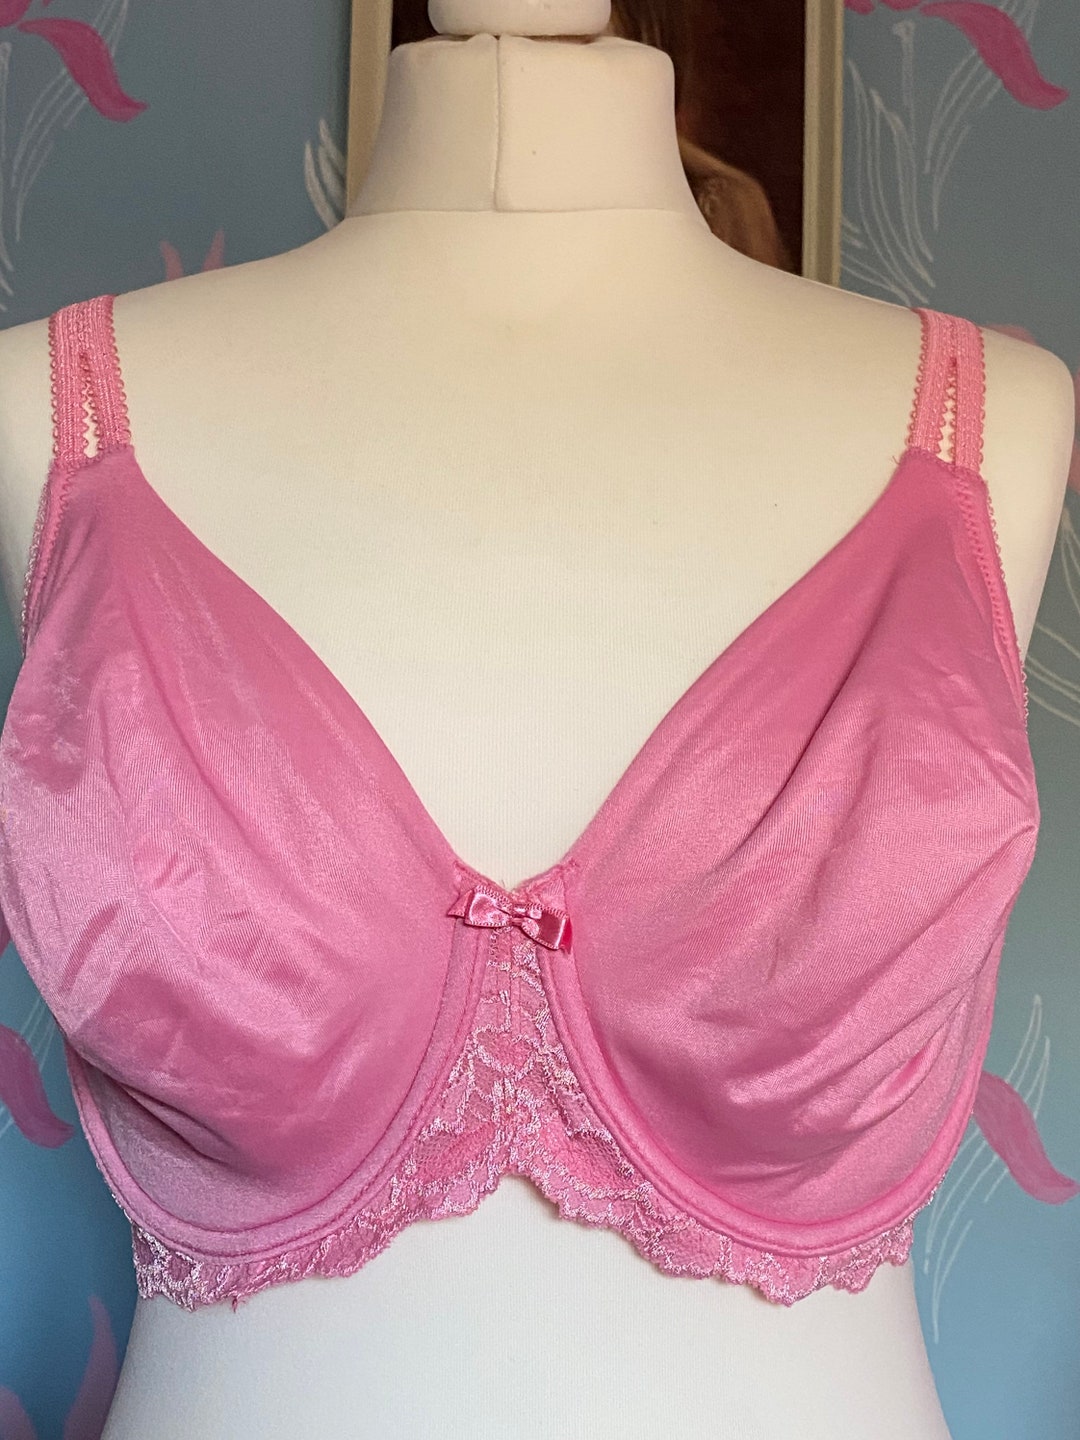 Vintage Style C. 1990s Pink Bra, Brassiere, Lingerie, Underwear